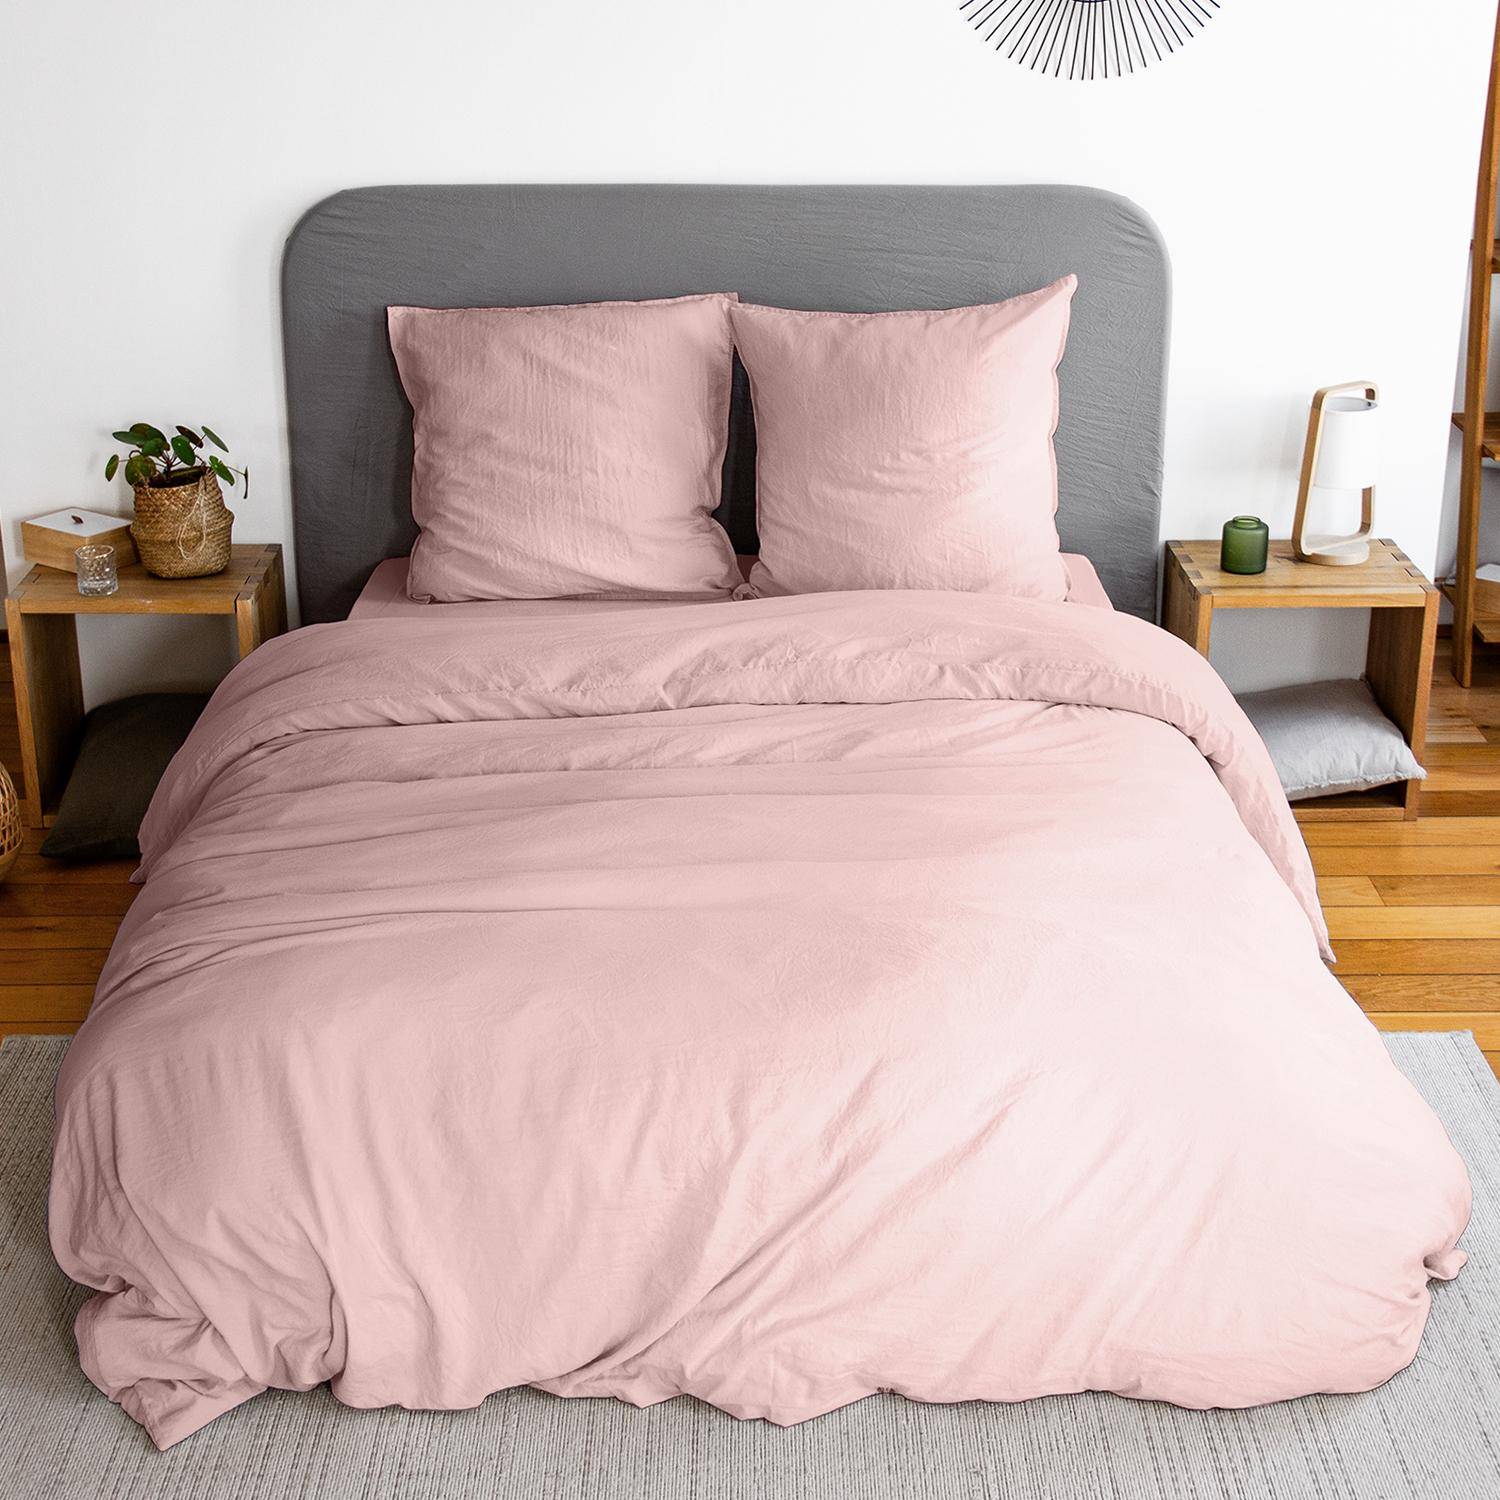 Bettwäsche-Set aus vorgewaschener Mikrofaser in rosa 240 x 220 cm für Doppelbetten, 1 Bettbezug und 2 Kissenbezüge Photo1